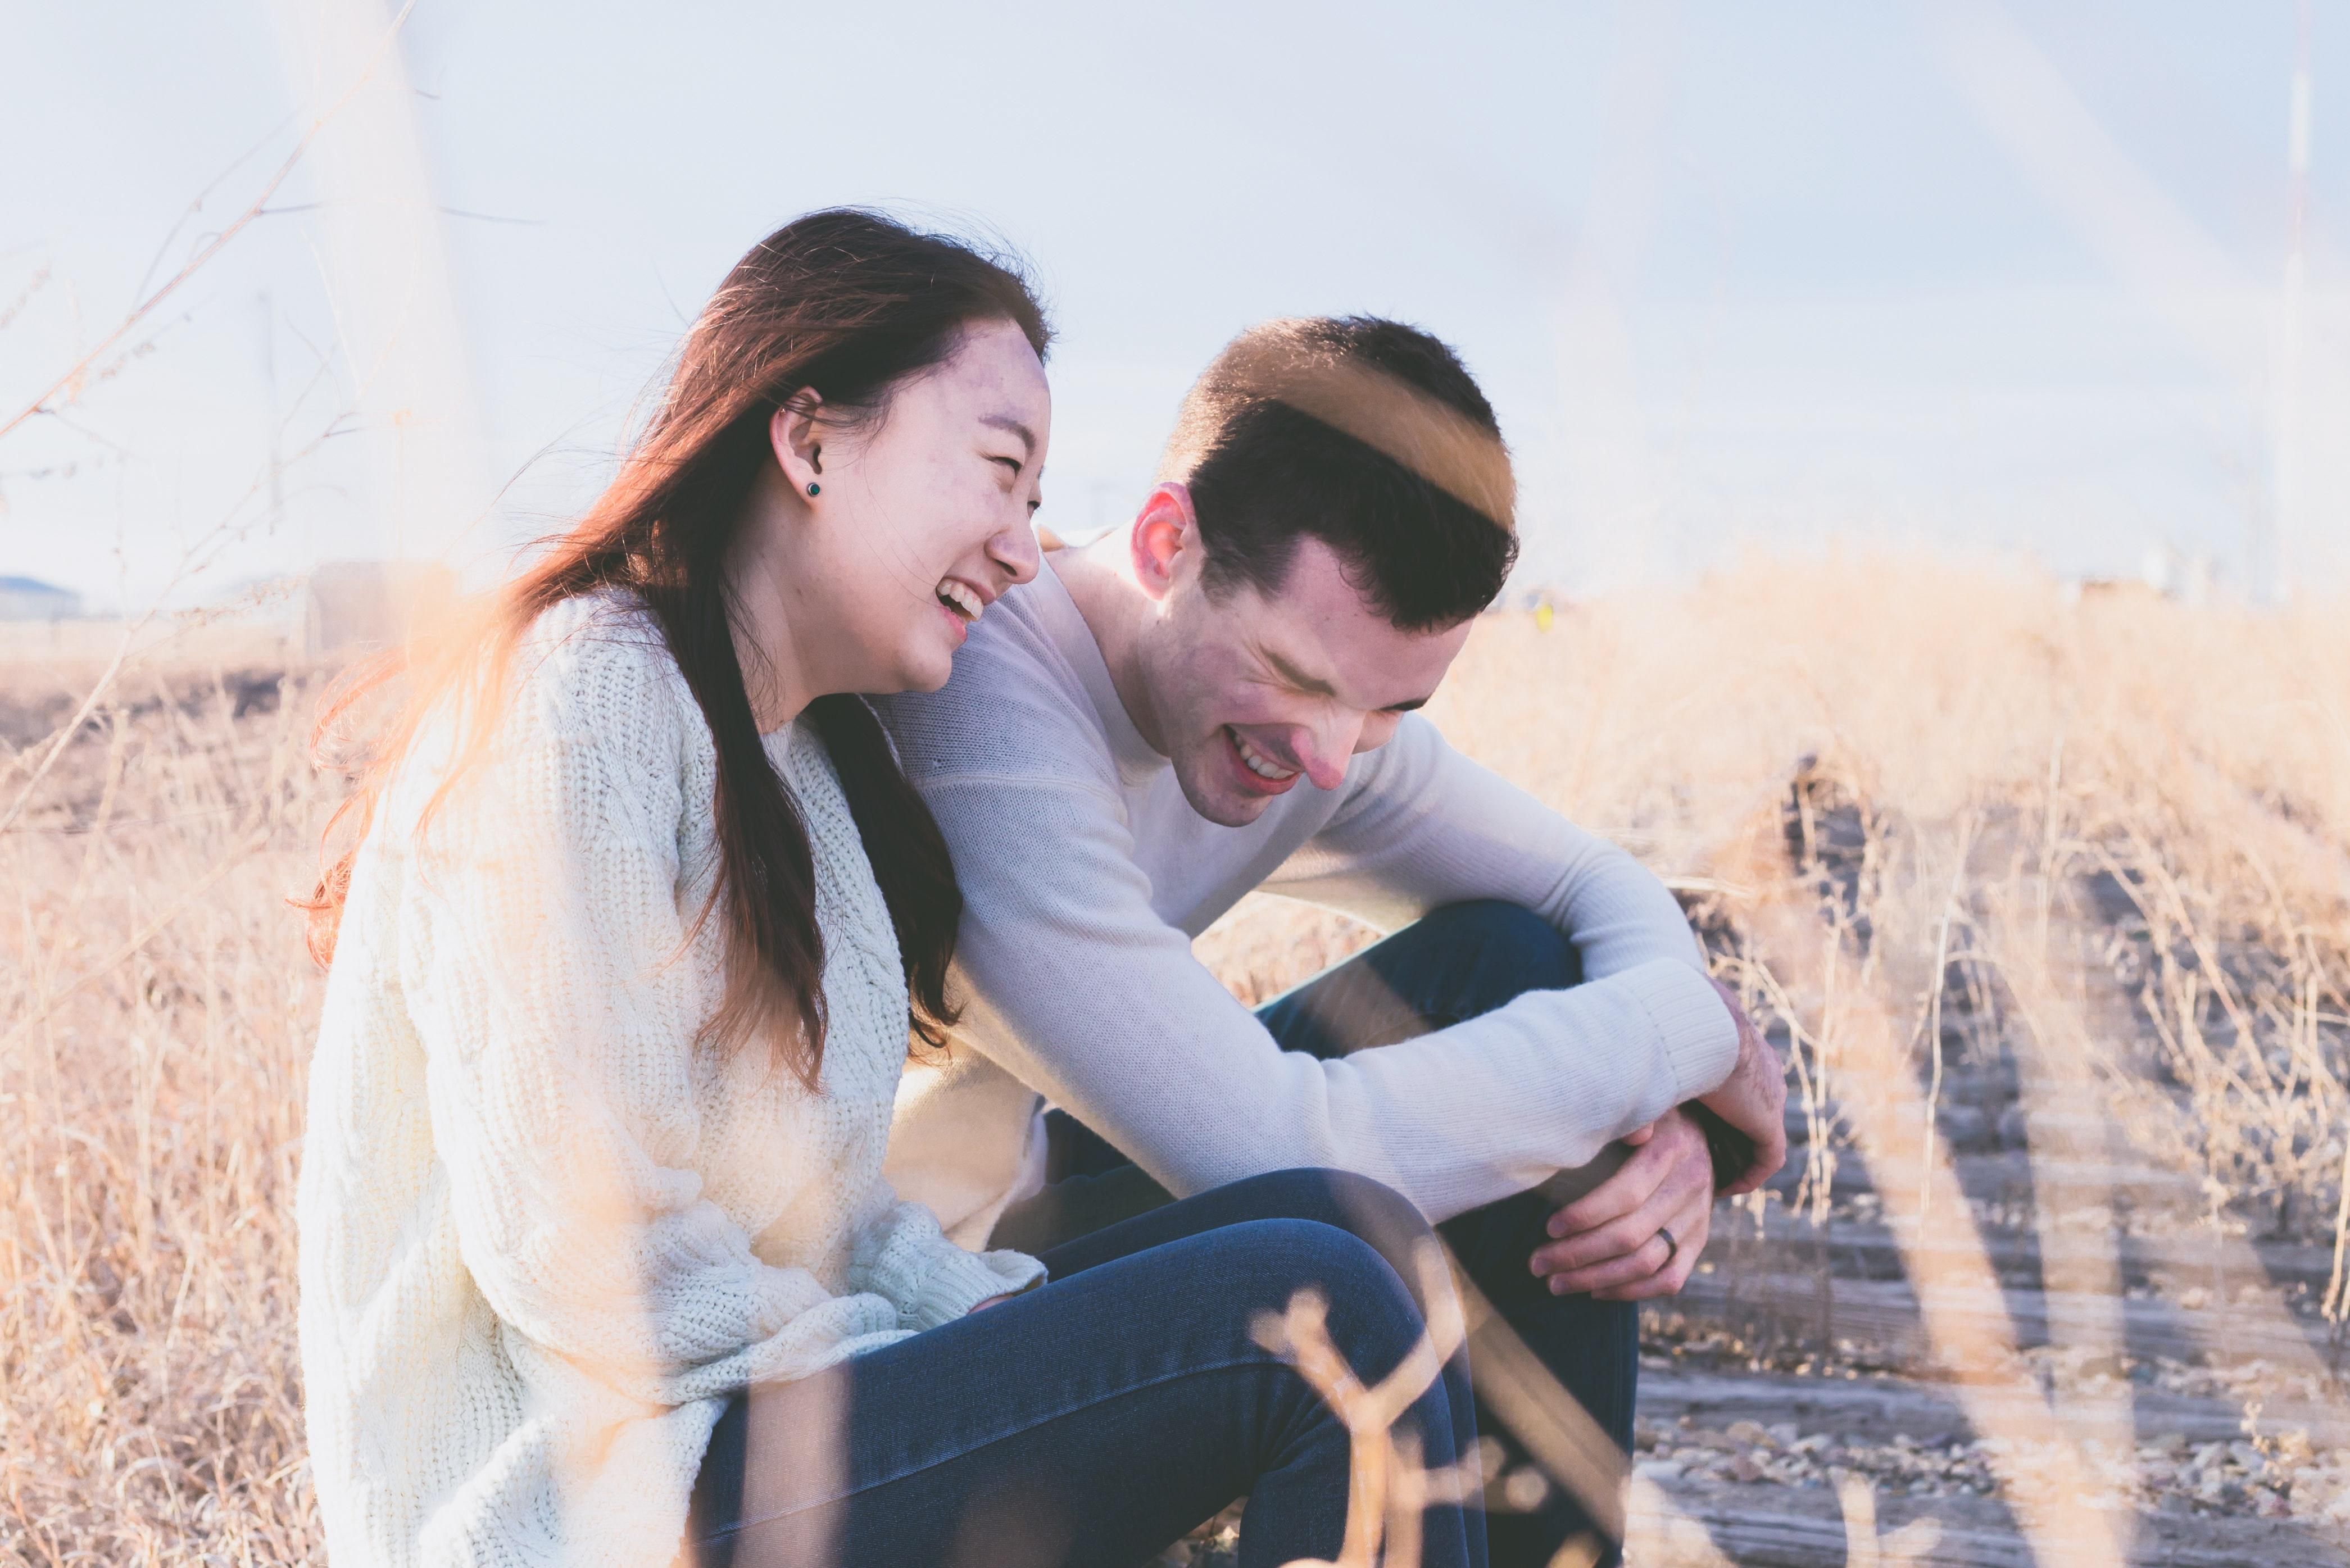 От знакомства до совместной жизни: 11 стадий в отношениях, которые проходят все пары